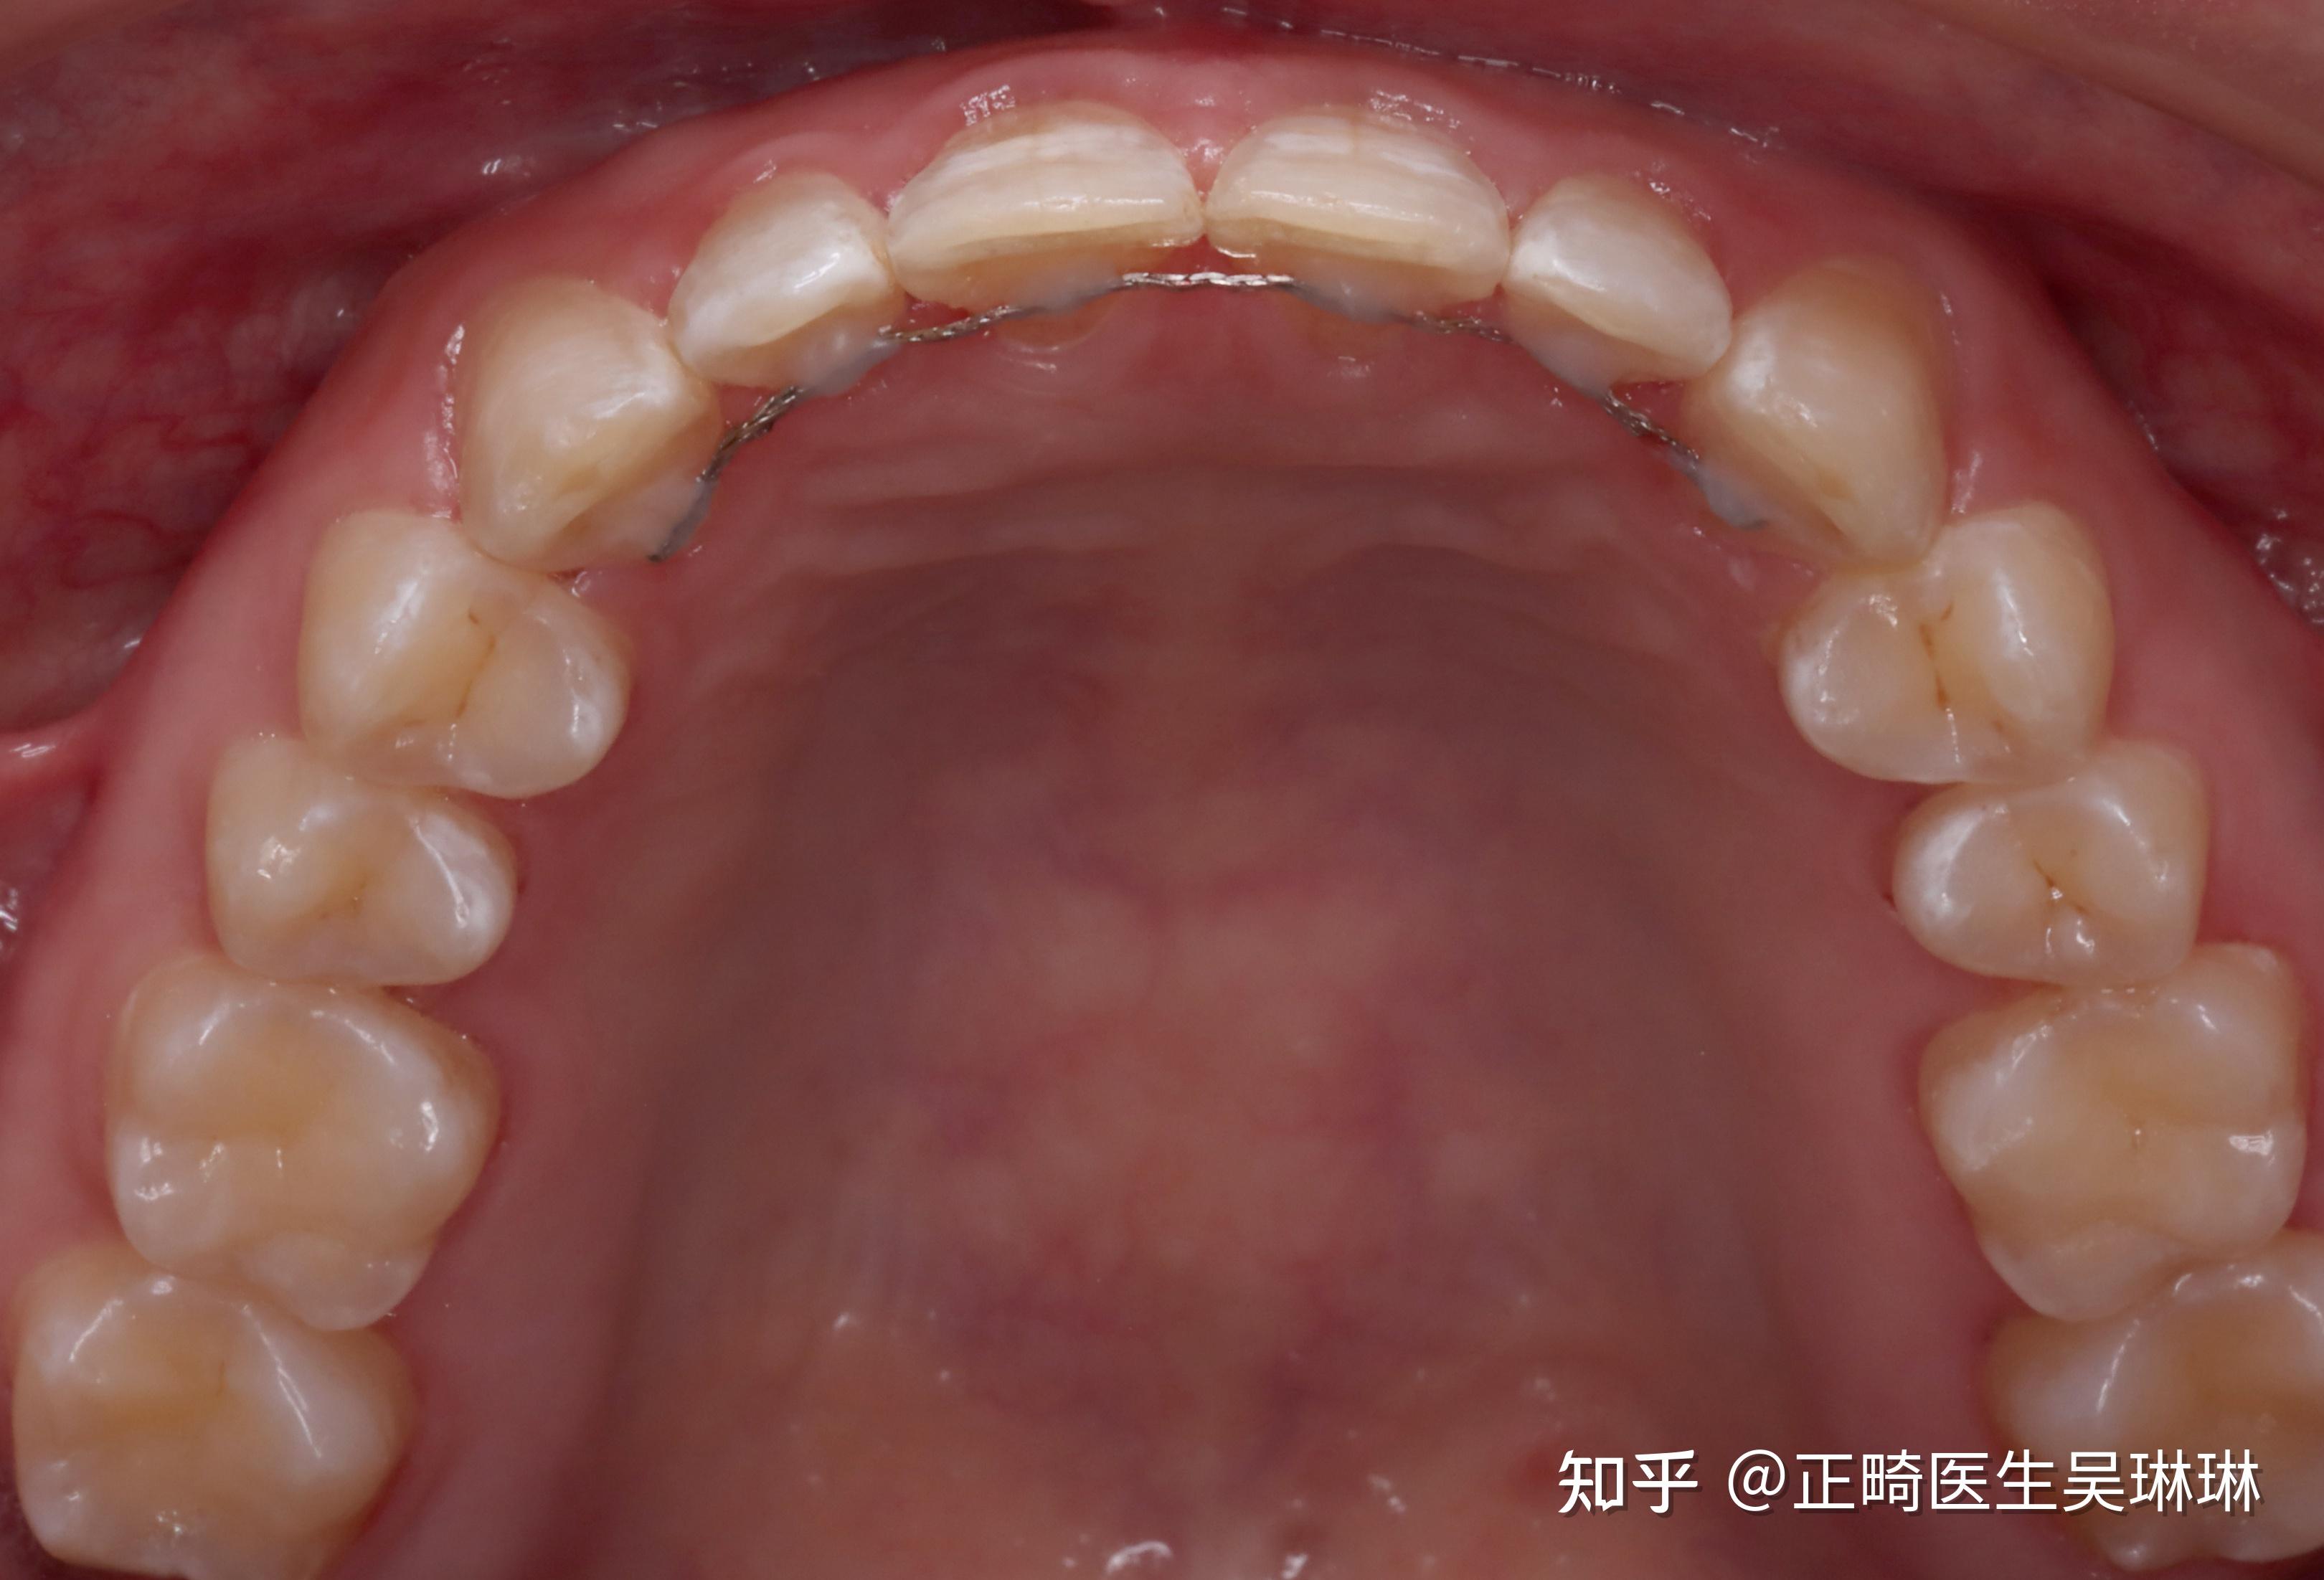 过小牙美学修复——正畸修复联合治疗|丁慧芬&杨涛-成都贝施美生物科技有限公司